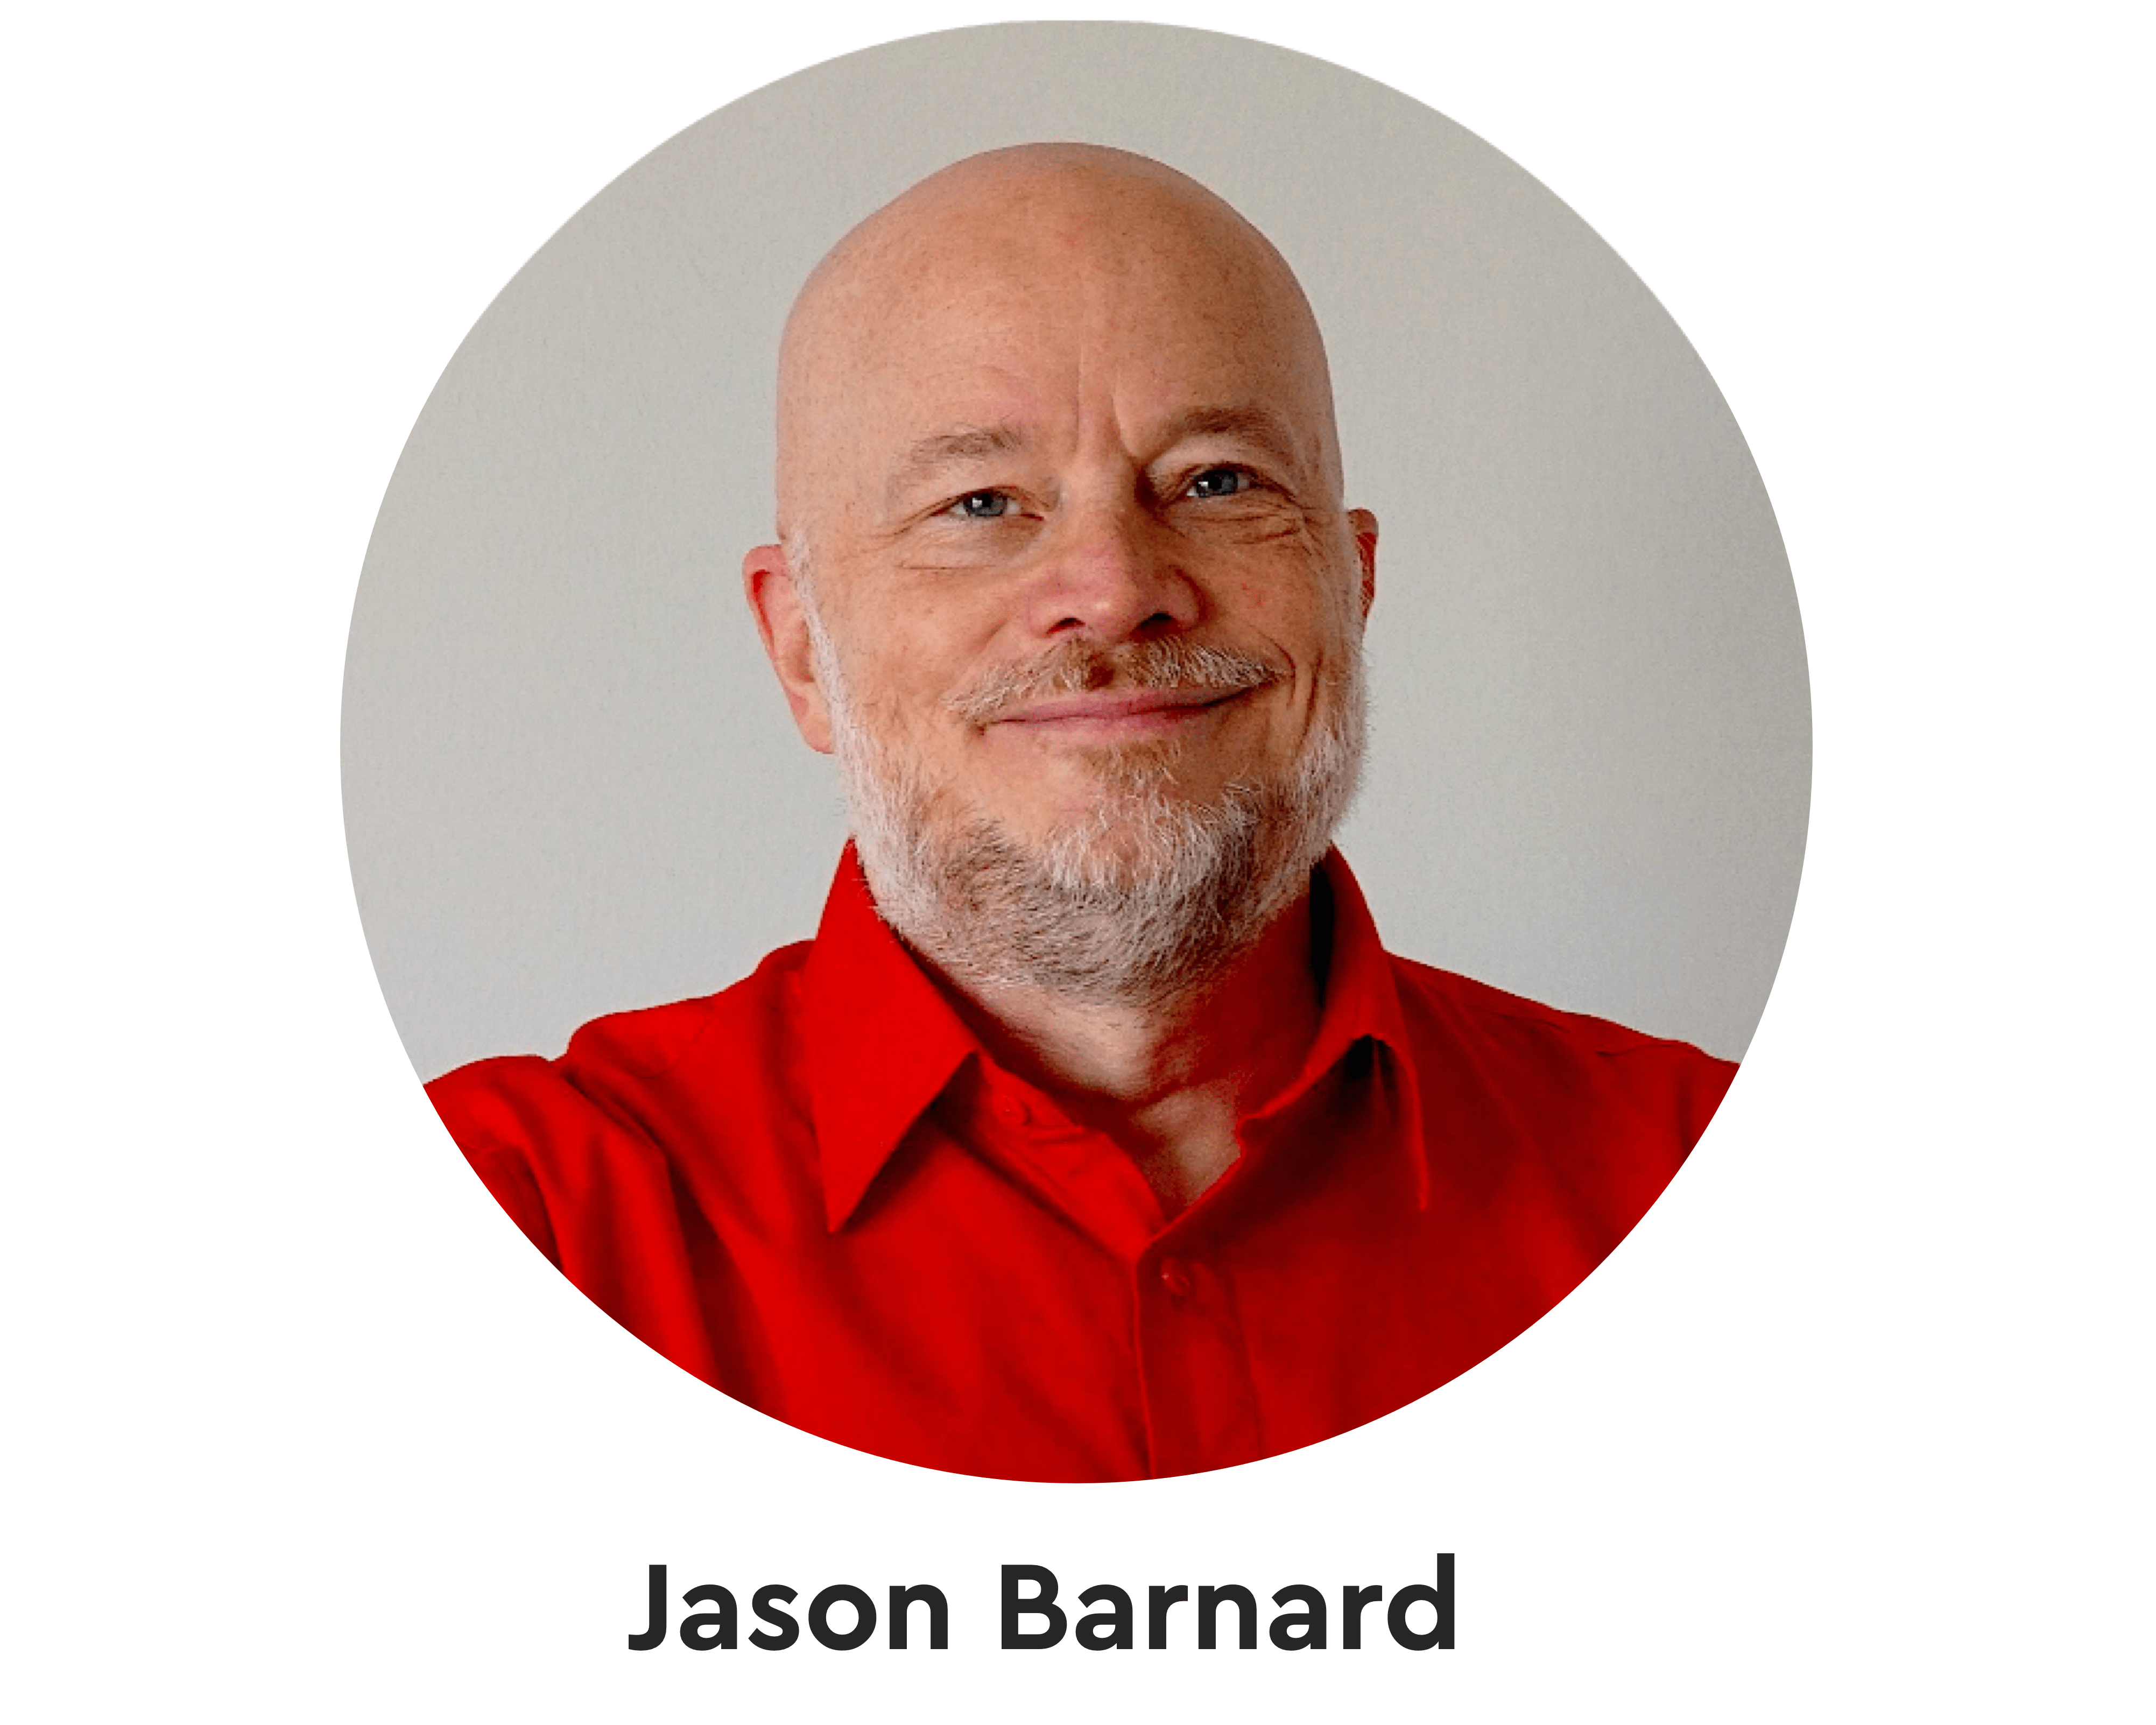 Jason Barnard